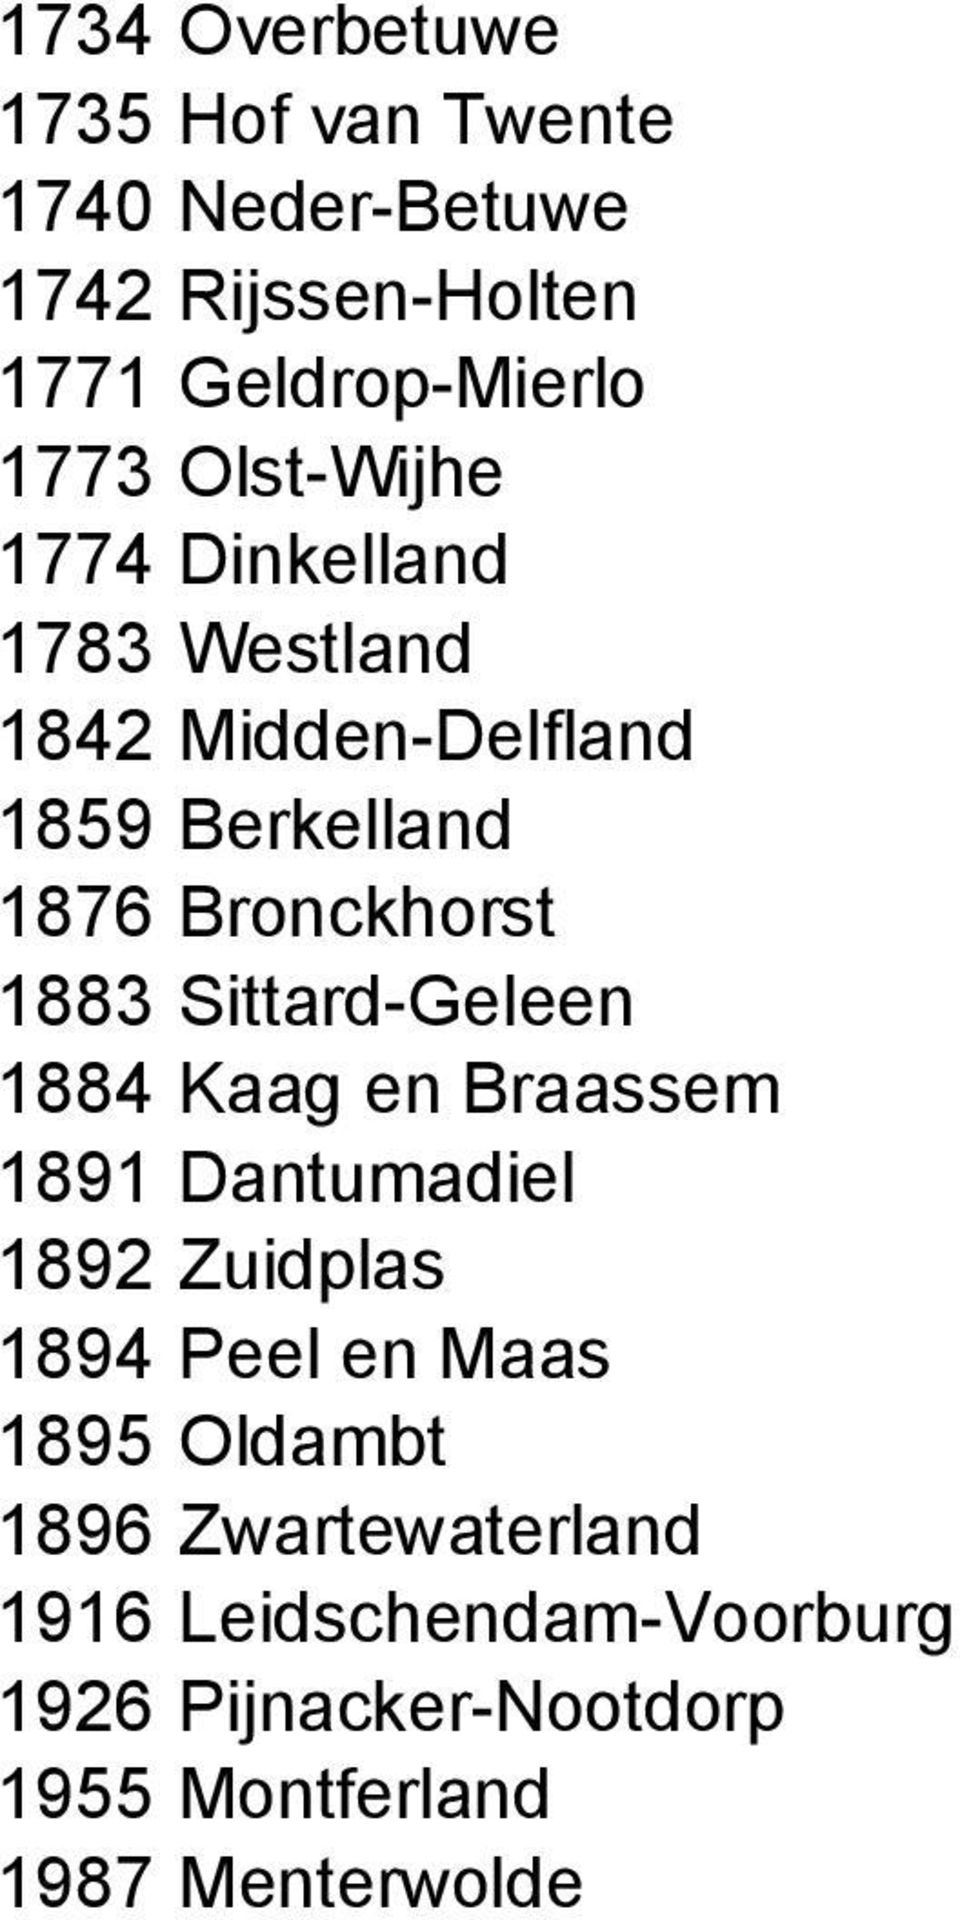 Sittard-Geleen 1884 Kaag en Braassem 1891 Dantumadiel 1892 Zuidplas 1894 Peel en Maas 1895 Oldambt